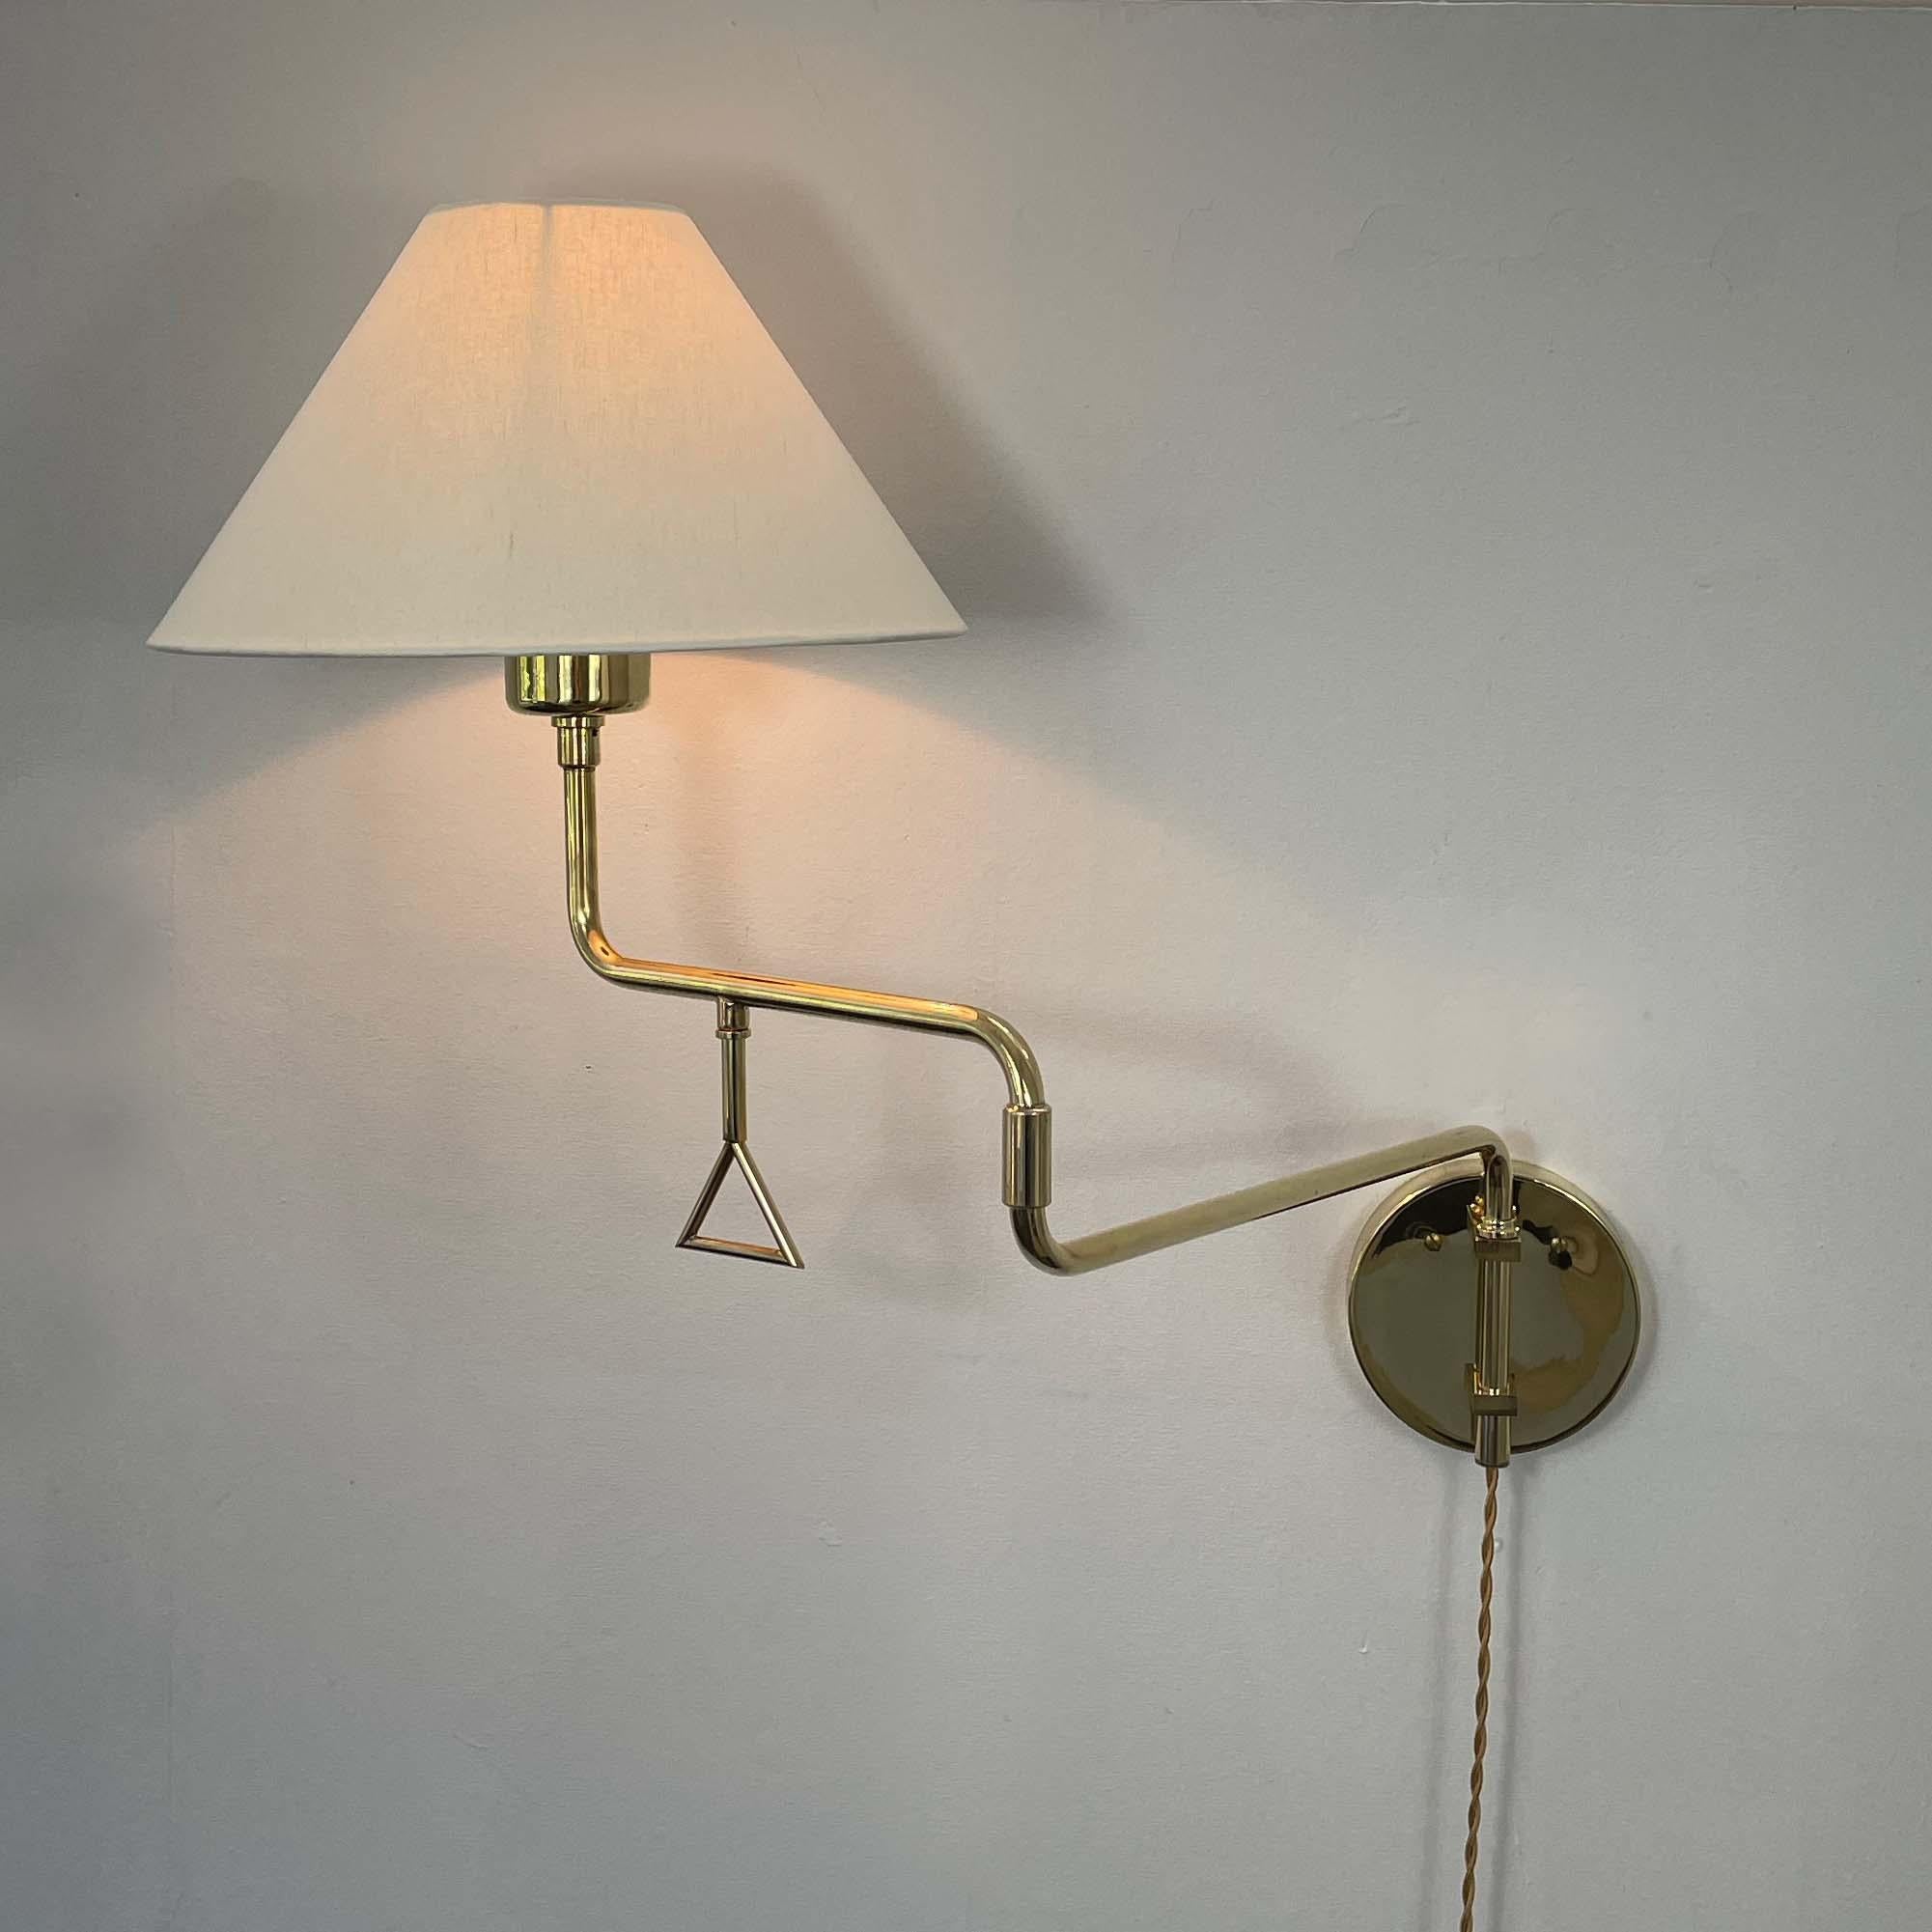 Articulating Brass Wall Light, Armatur Hantverk Tibro, Sweden 1950s For Sale 9